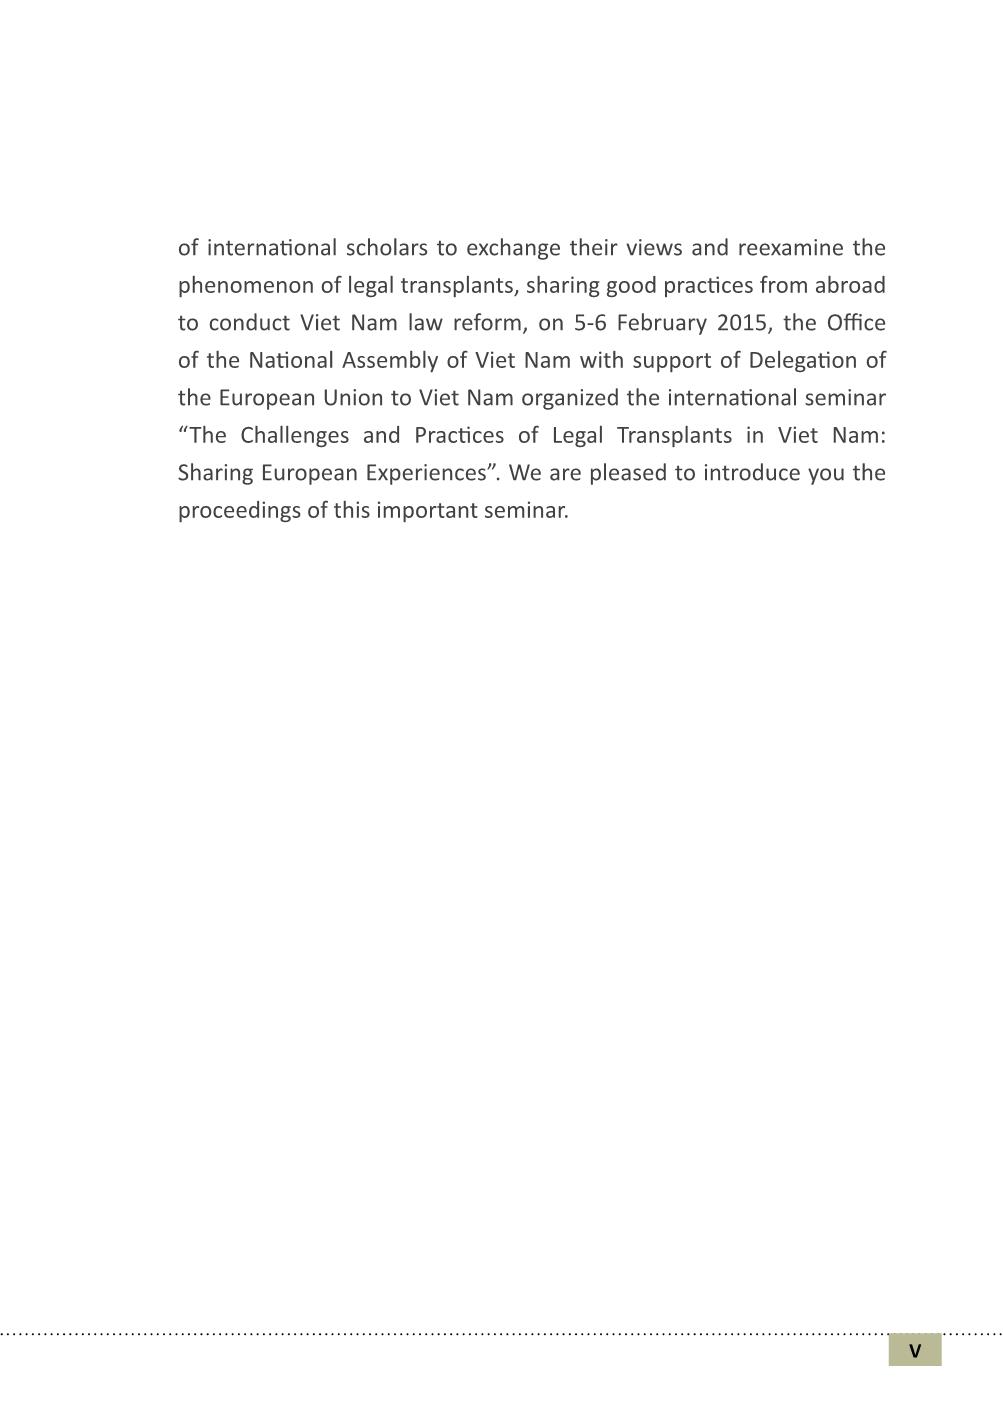 Chuyển hóa pháp luật và các vấn đề ở Việt Nam (Phần 1) trang 4